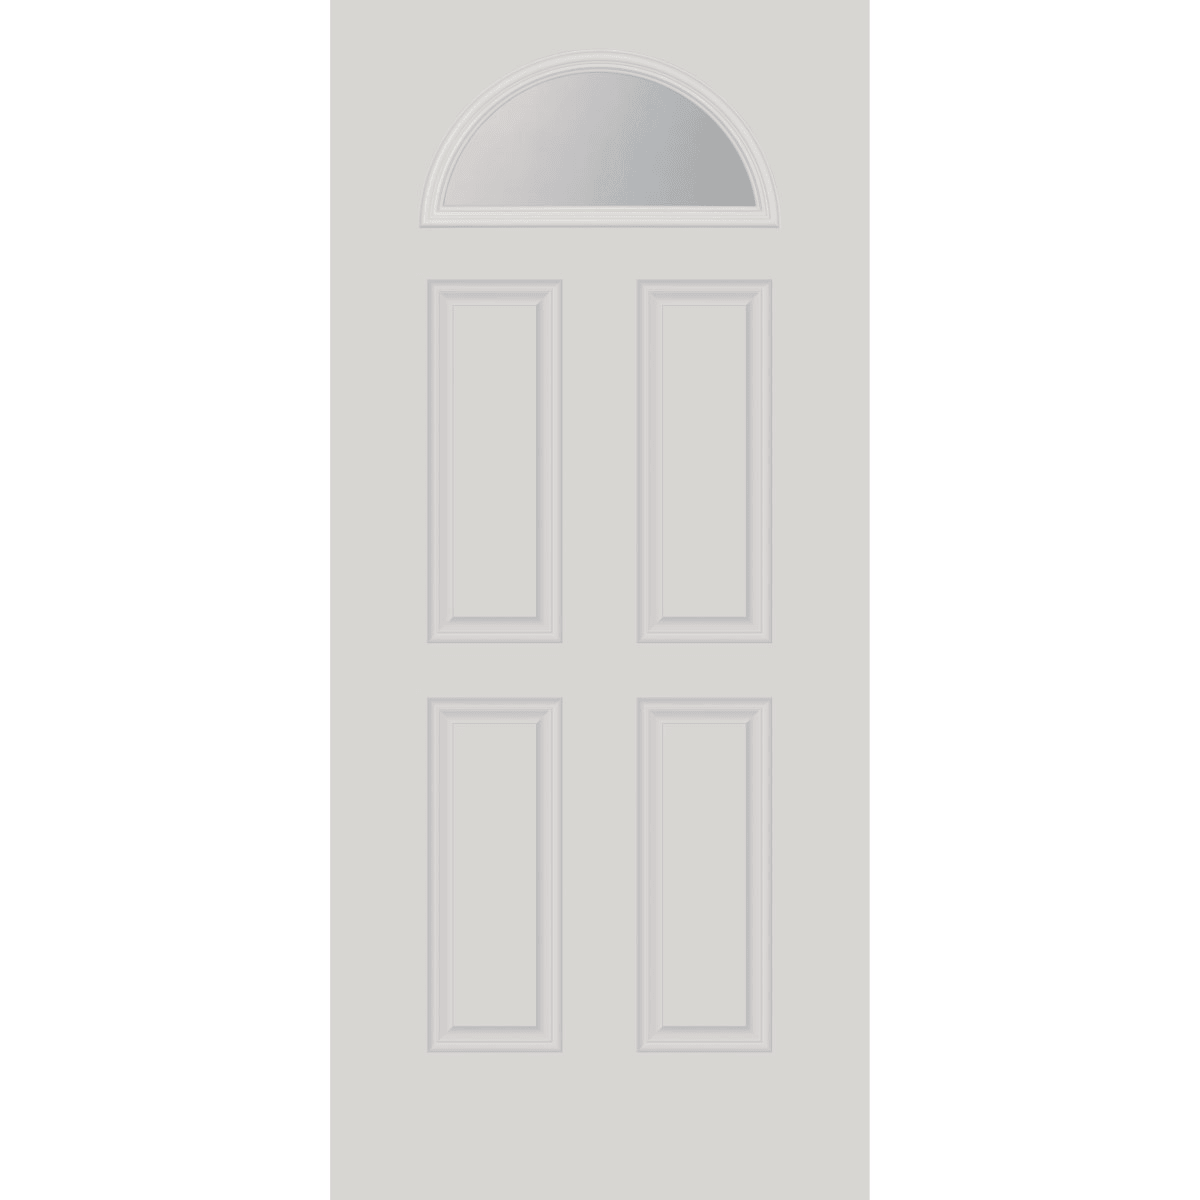 Fanlite Door Glass - Pease Doors: The Door Store